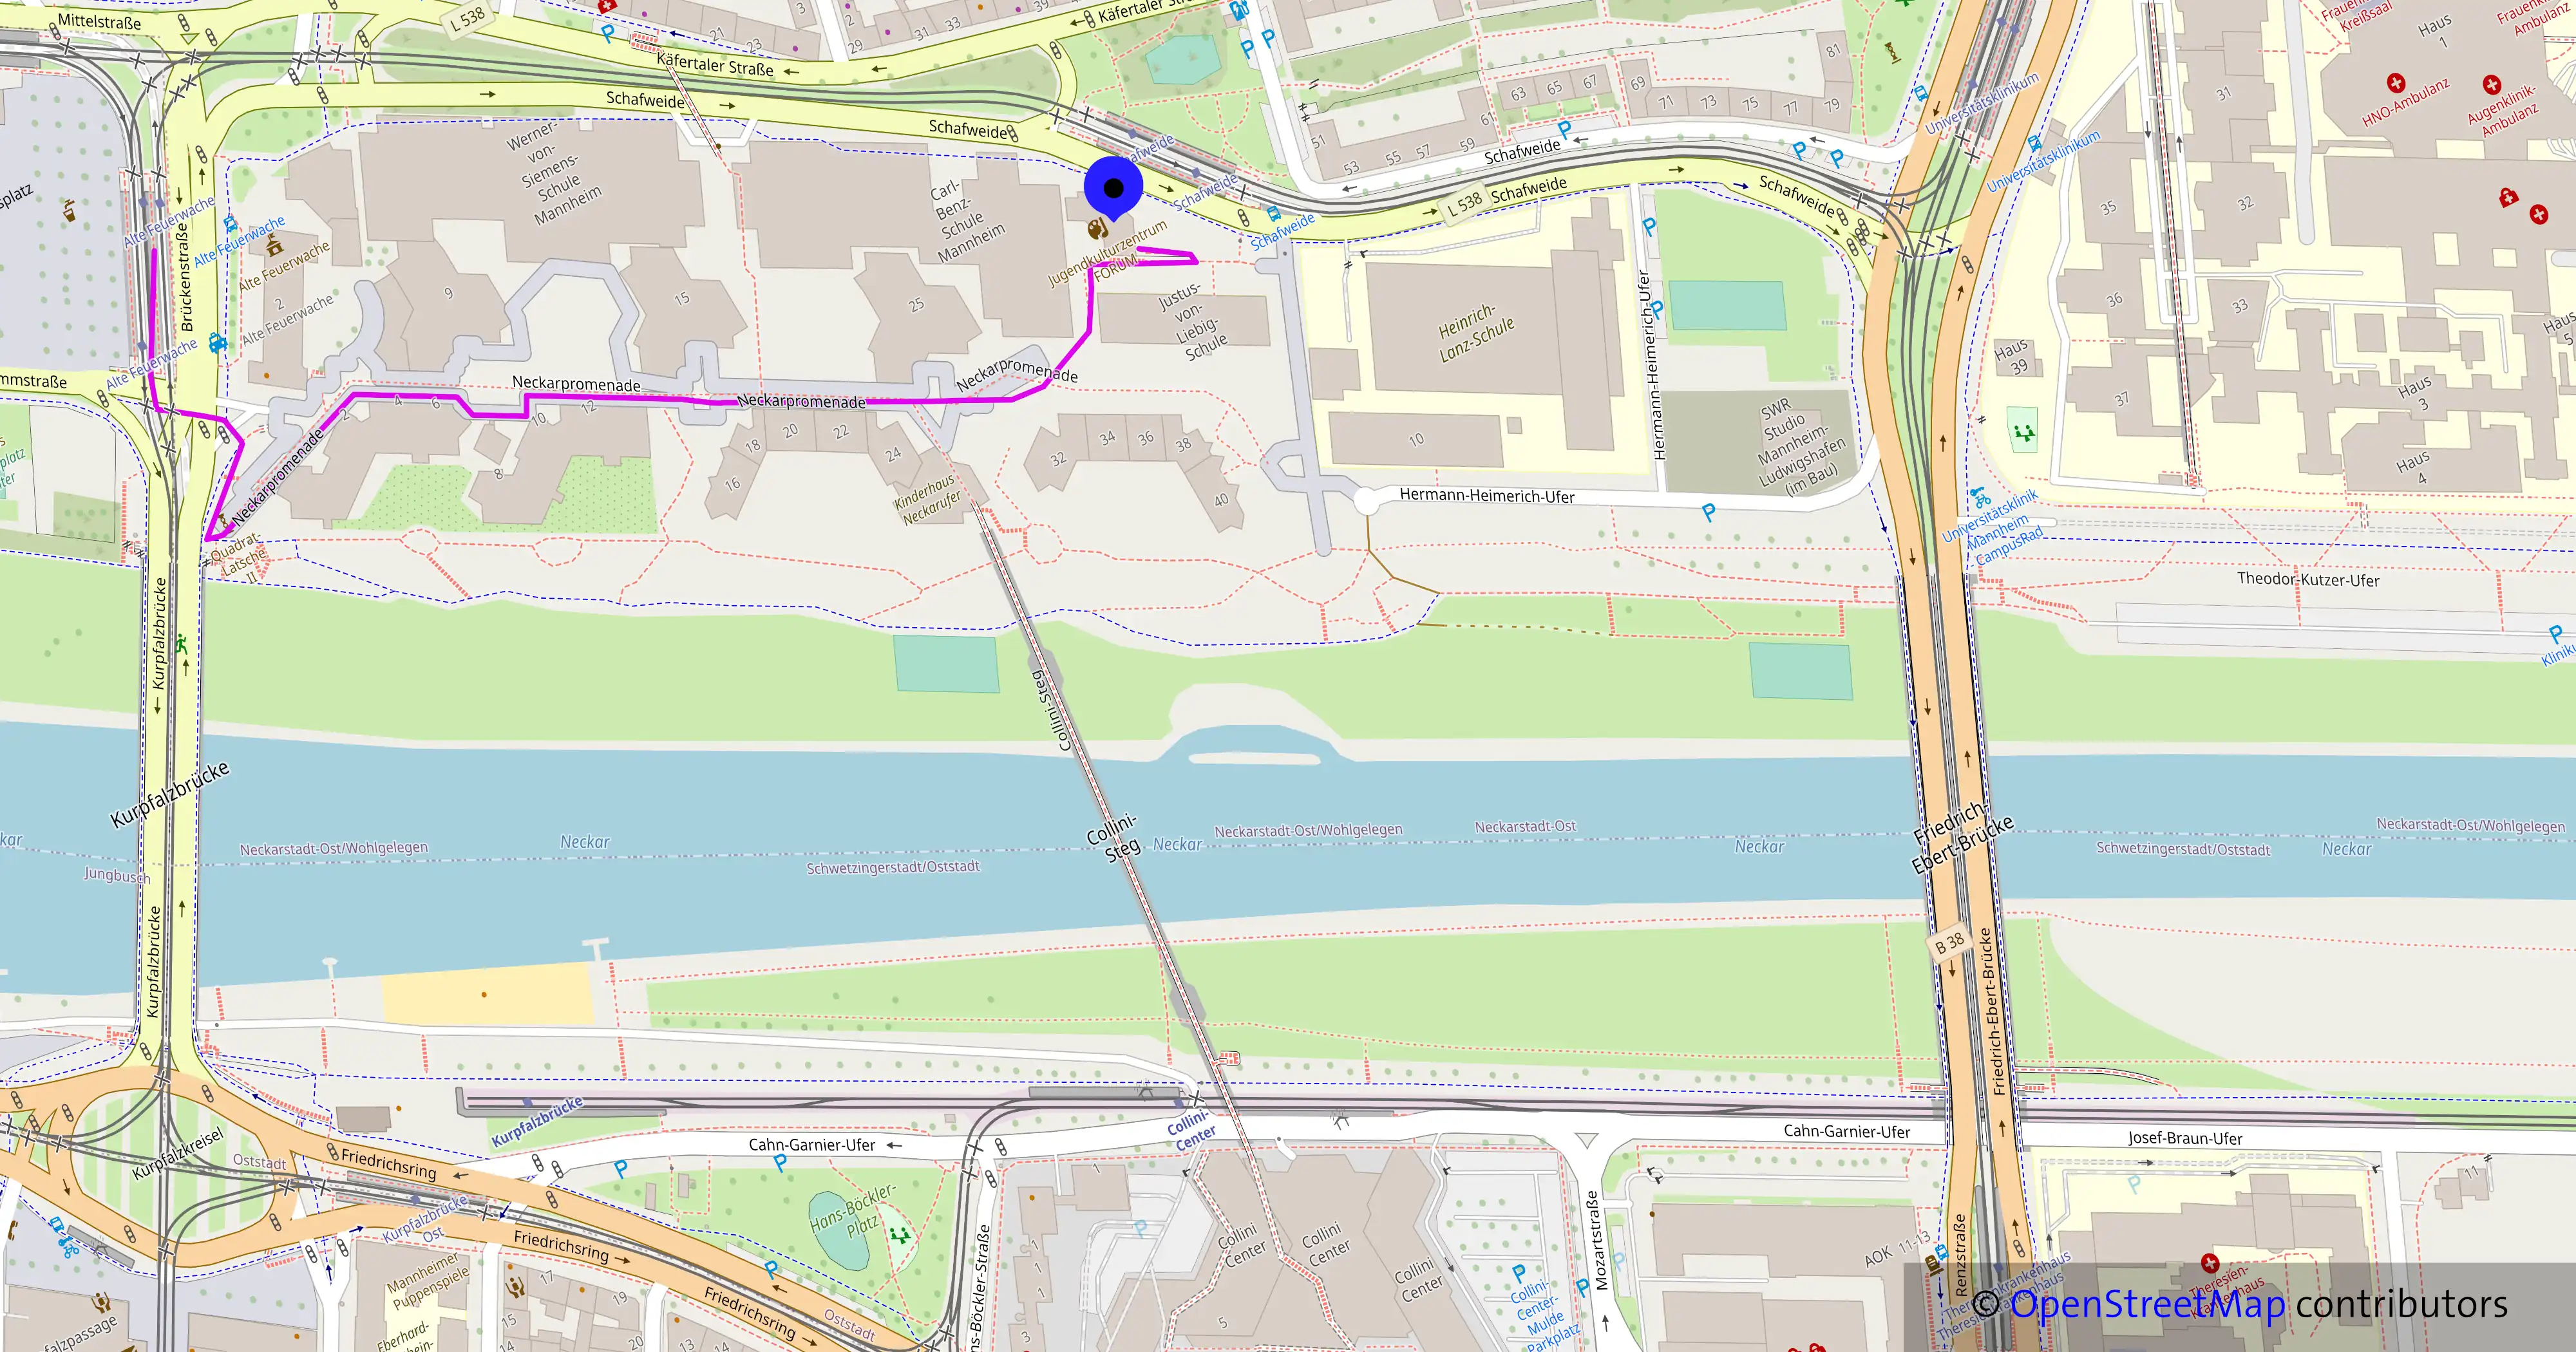 Bild einer Umgebungskarte des forums. Eingezeichnet ist mit violett der Weg von der Haltestelle Alter Meßplatz bis zum Forum